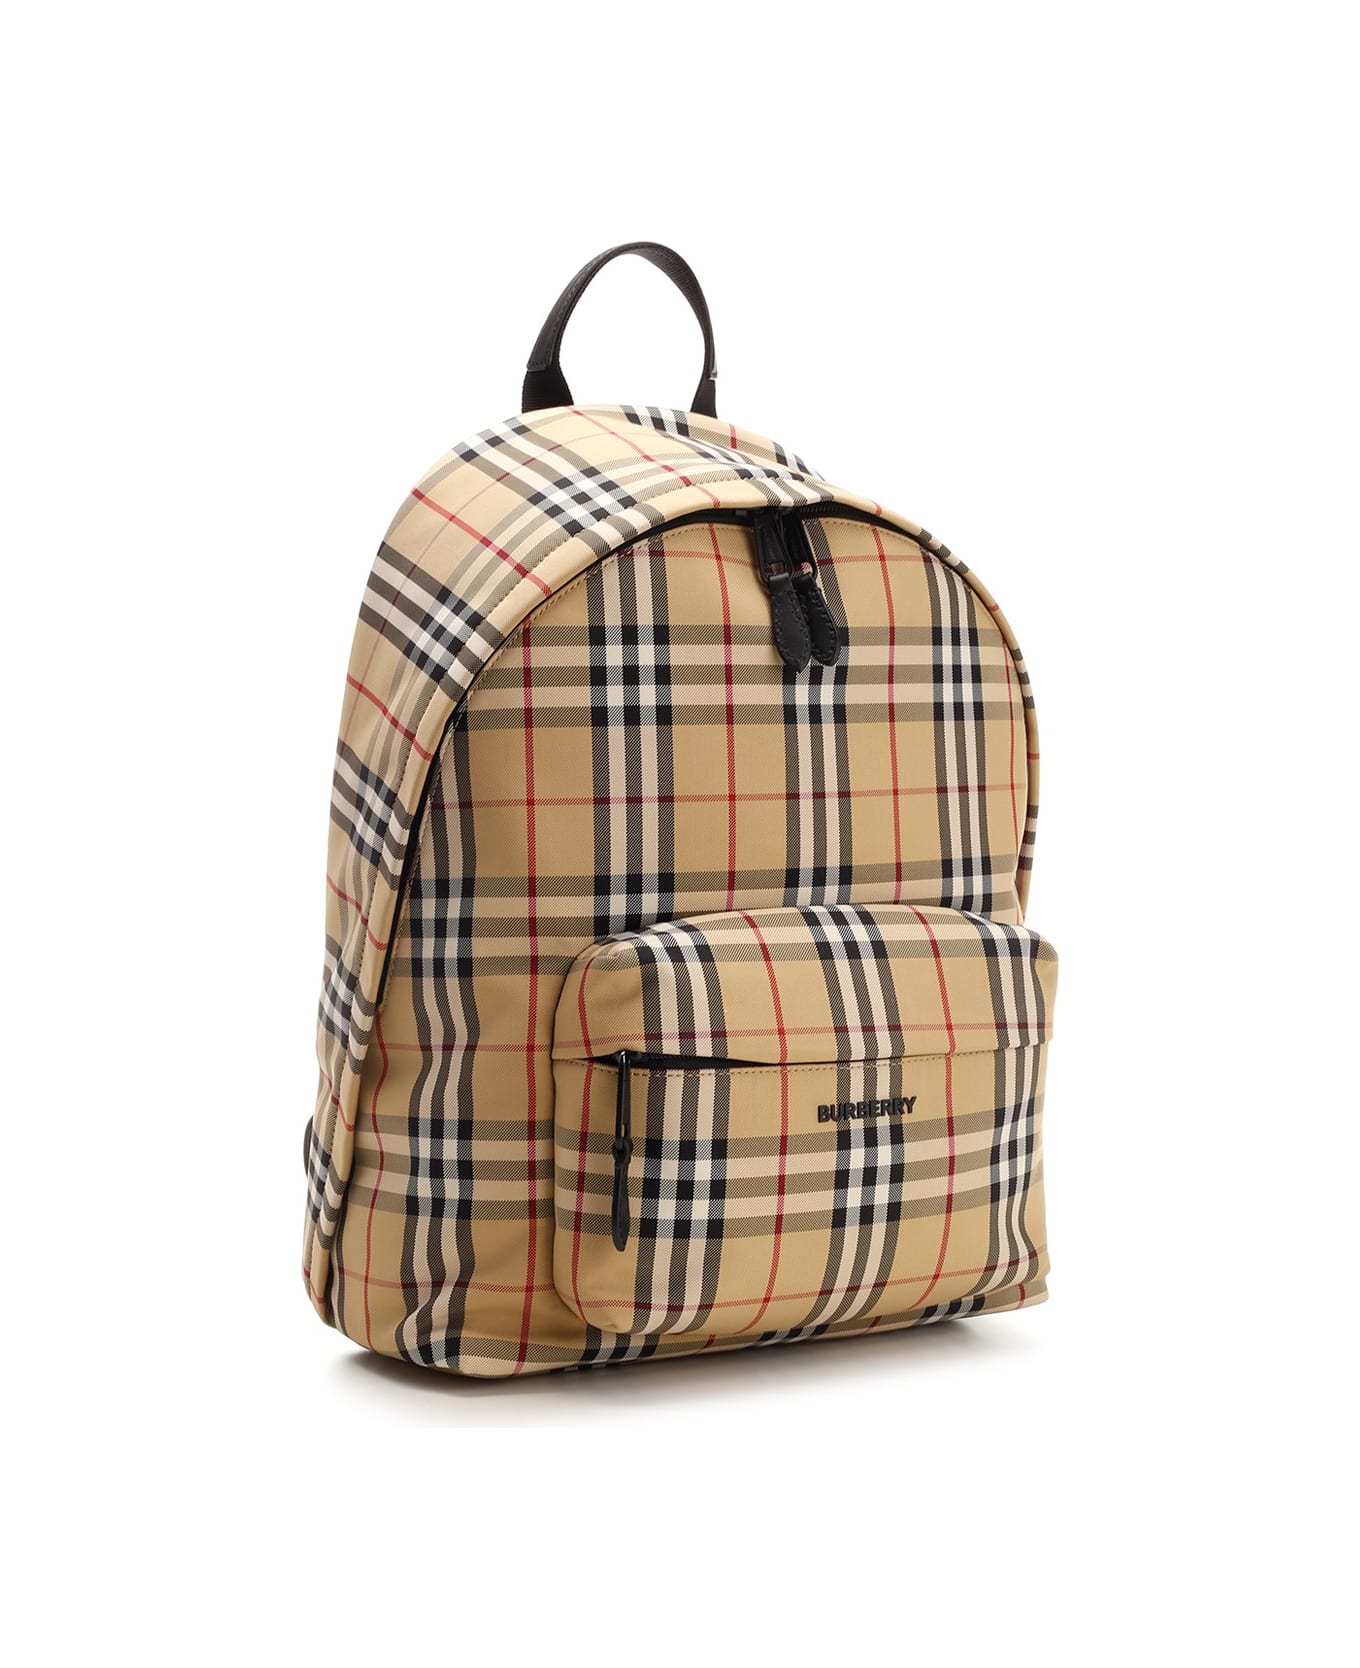 Burberry Nylon Backpack - Beige バックパック